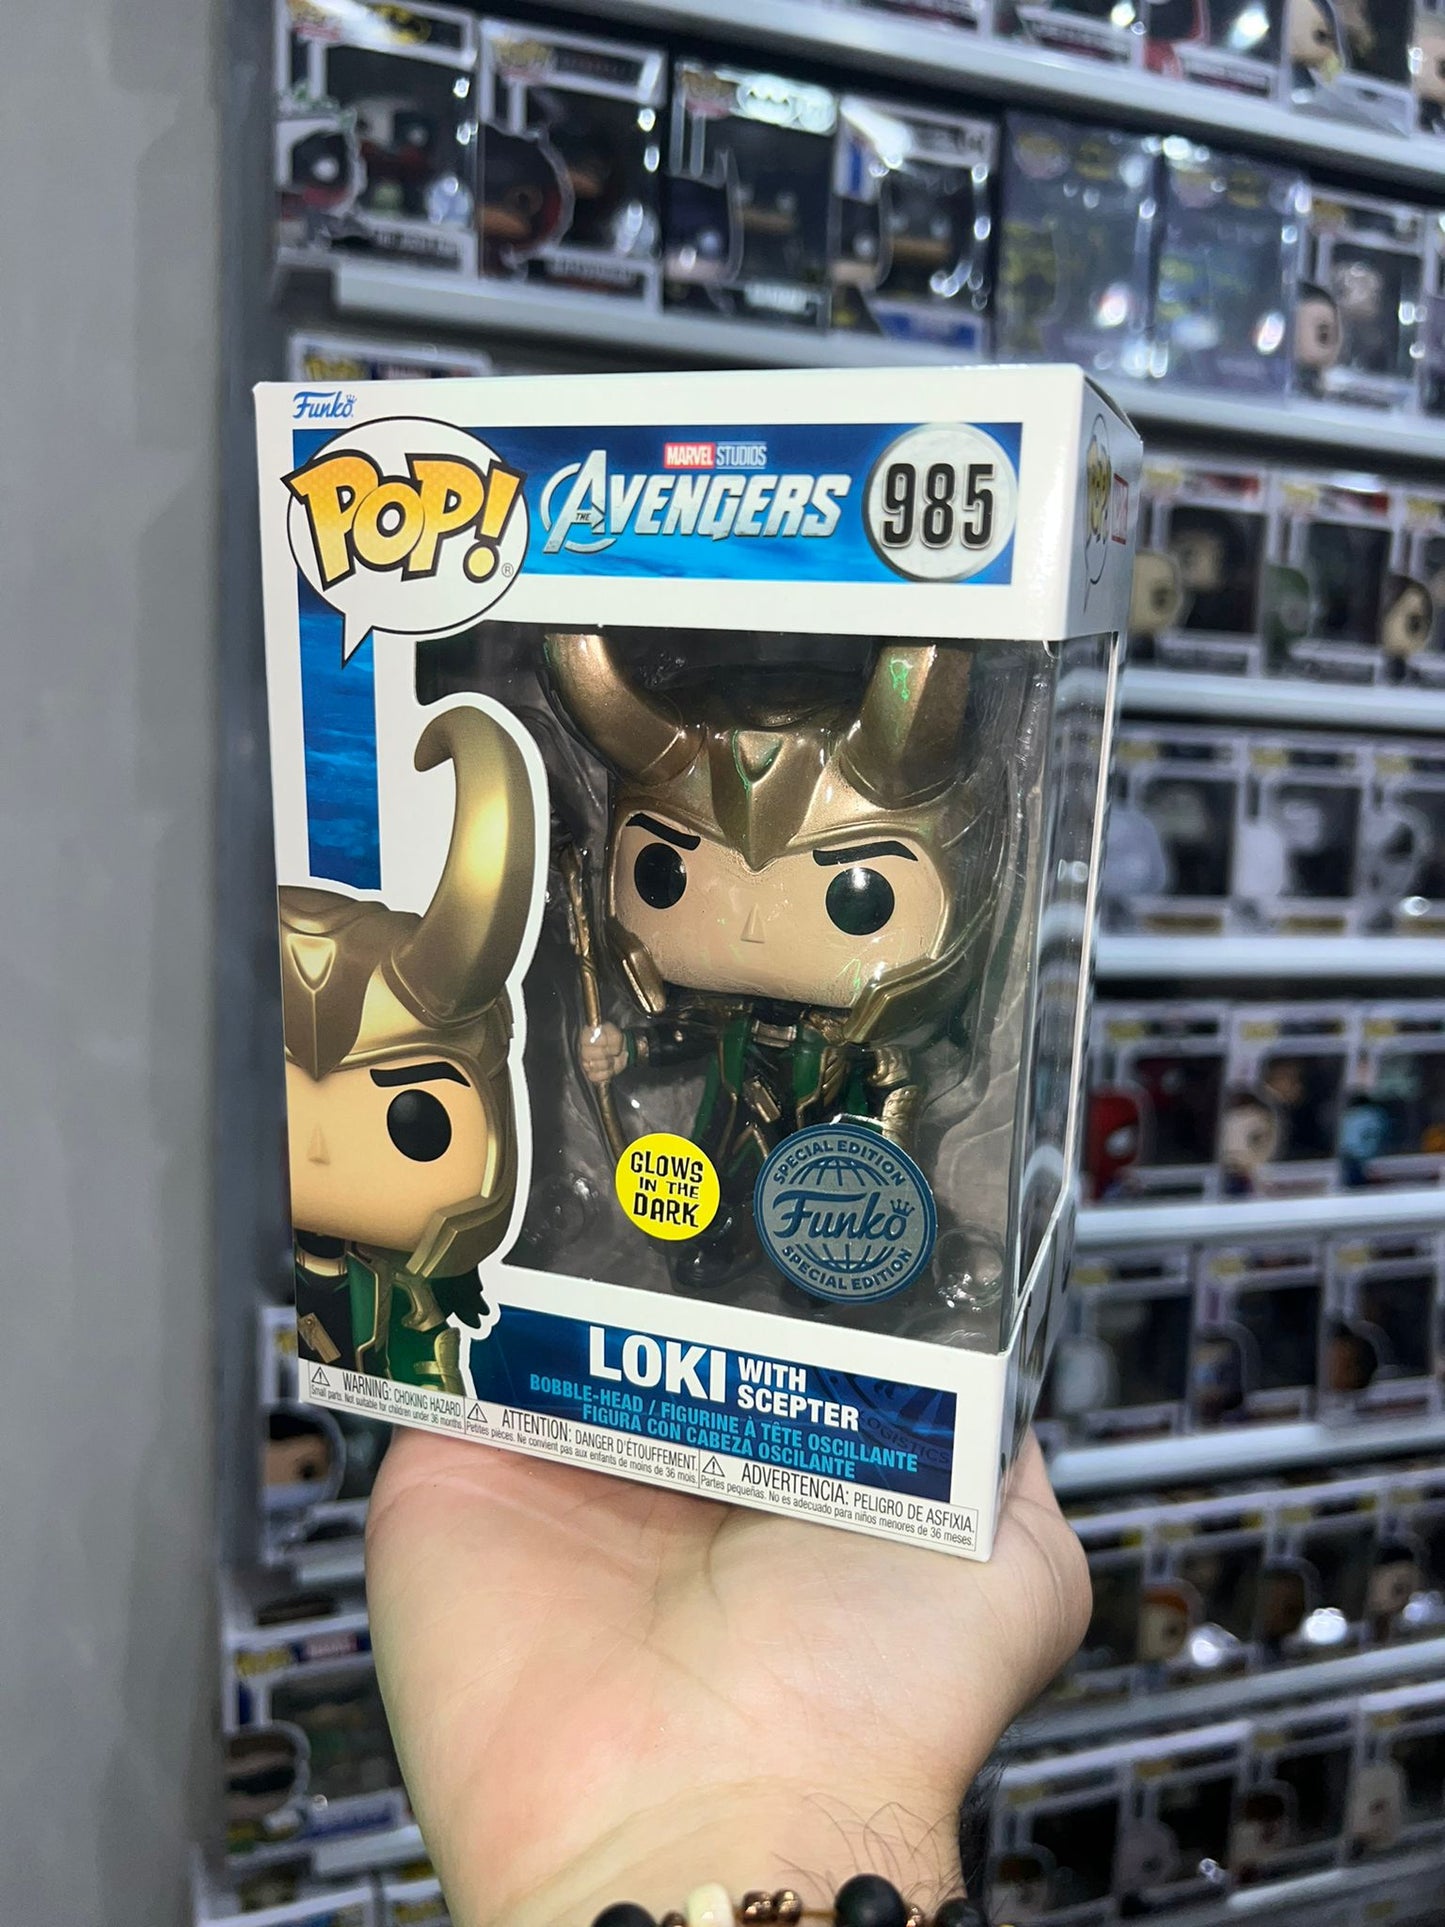 Loki - Loki with Scepter (985) "Funko Special" Glow